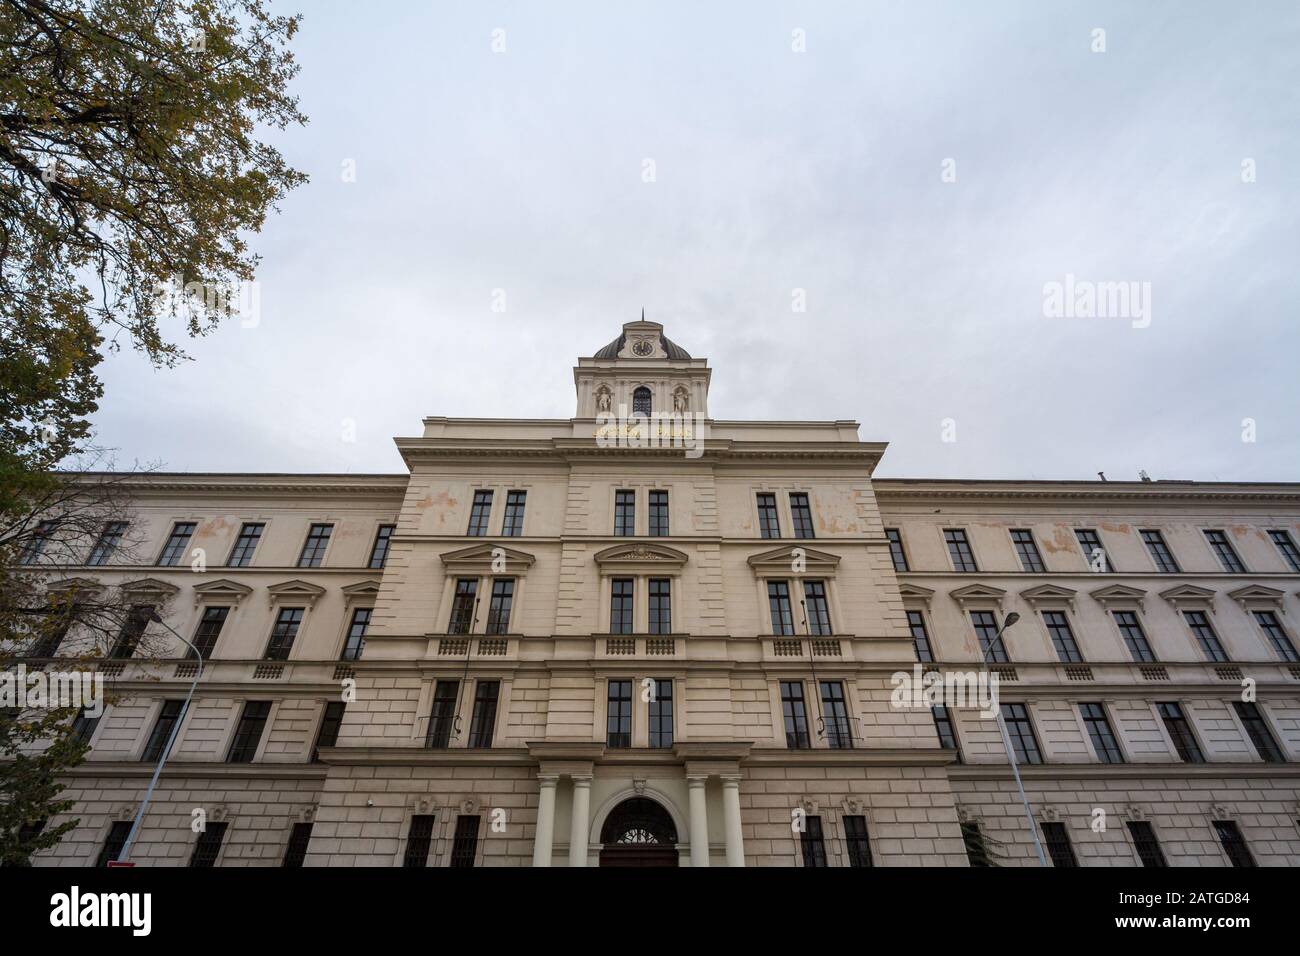 Hauptfassade des historischen Gebäudes des Gerichtshofs (Justicni Palac) in Prag, Tschechien. Es ist ein Wahrzeichen des tschechischen Rechtssystems, ho Stockfoto